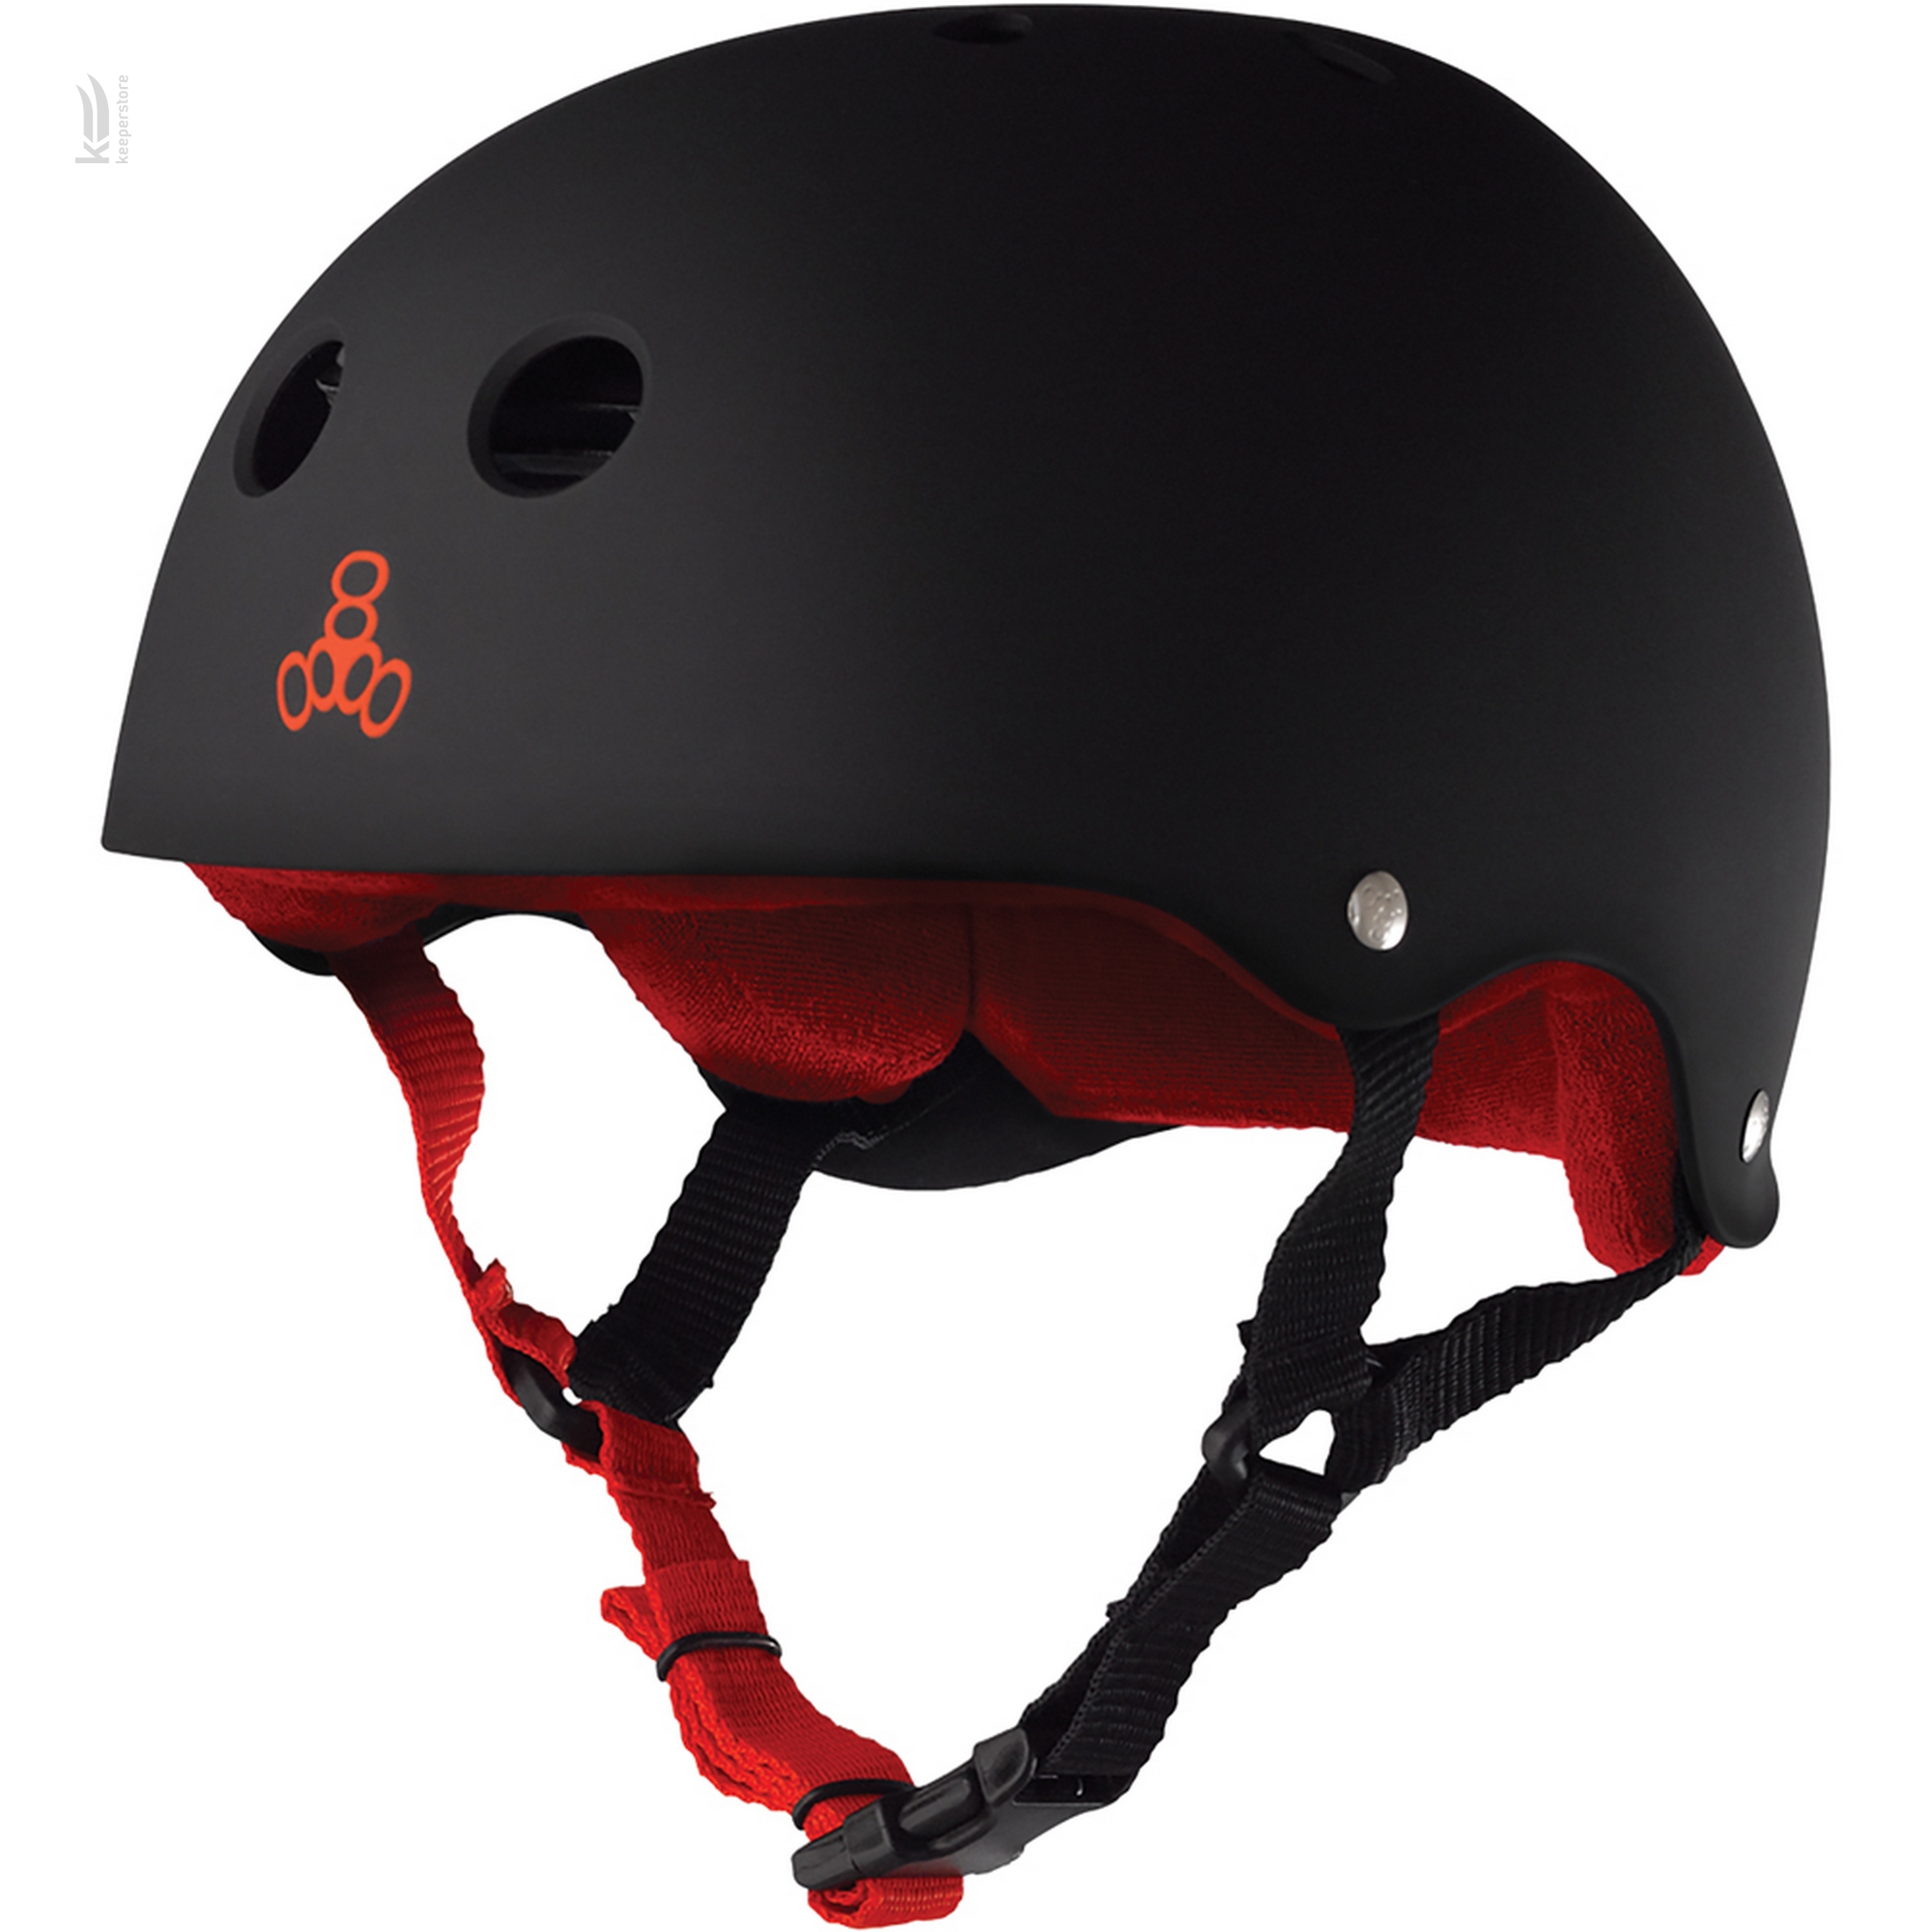 Шлем для скейтбординга Triple8 Sweatsaver Helmet Black w/ Red (M)